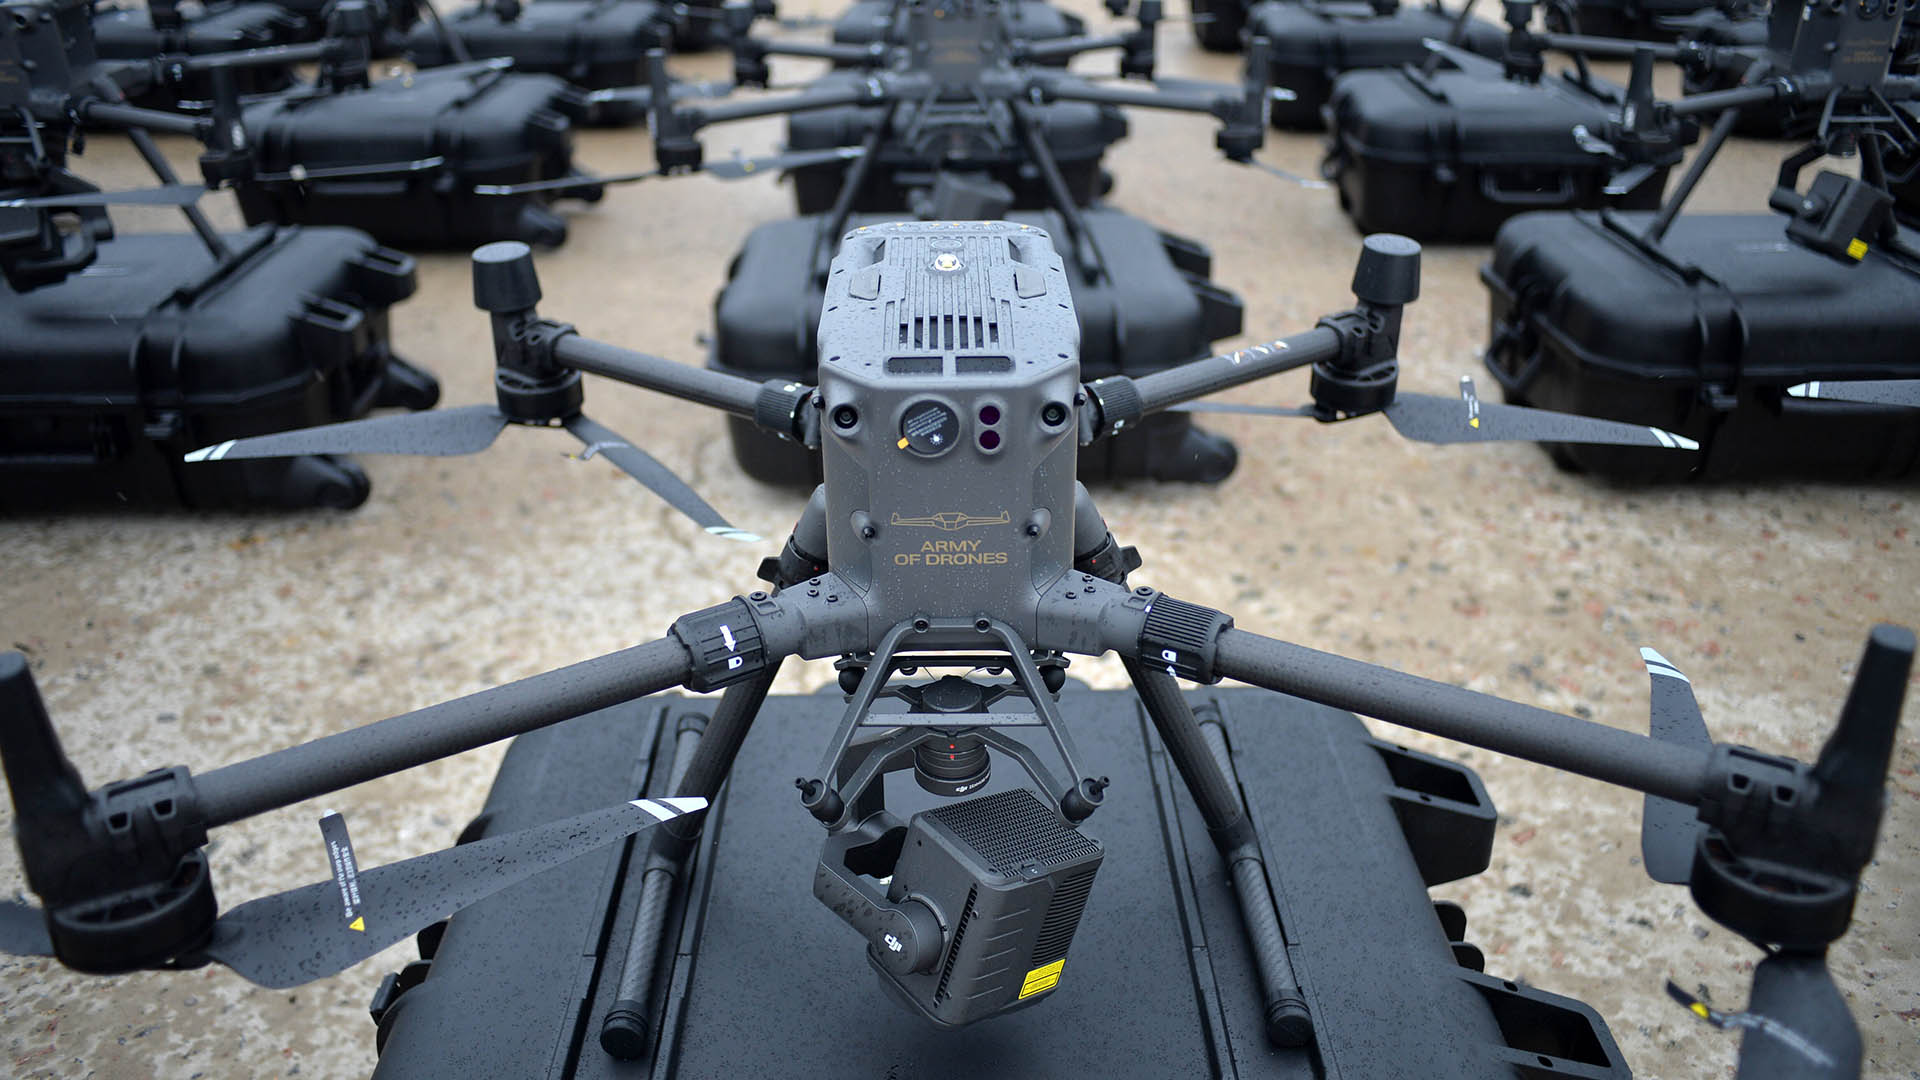 Eine Drohne des Typs DJI Matrice 300. | IMAGO/NurPhoto